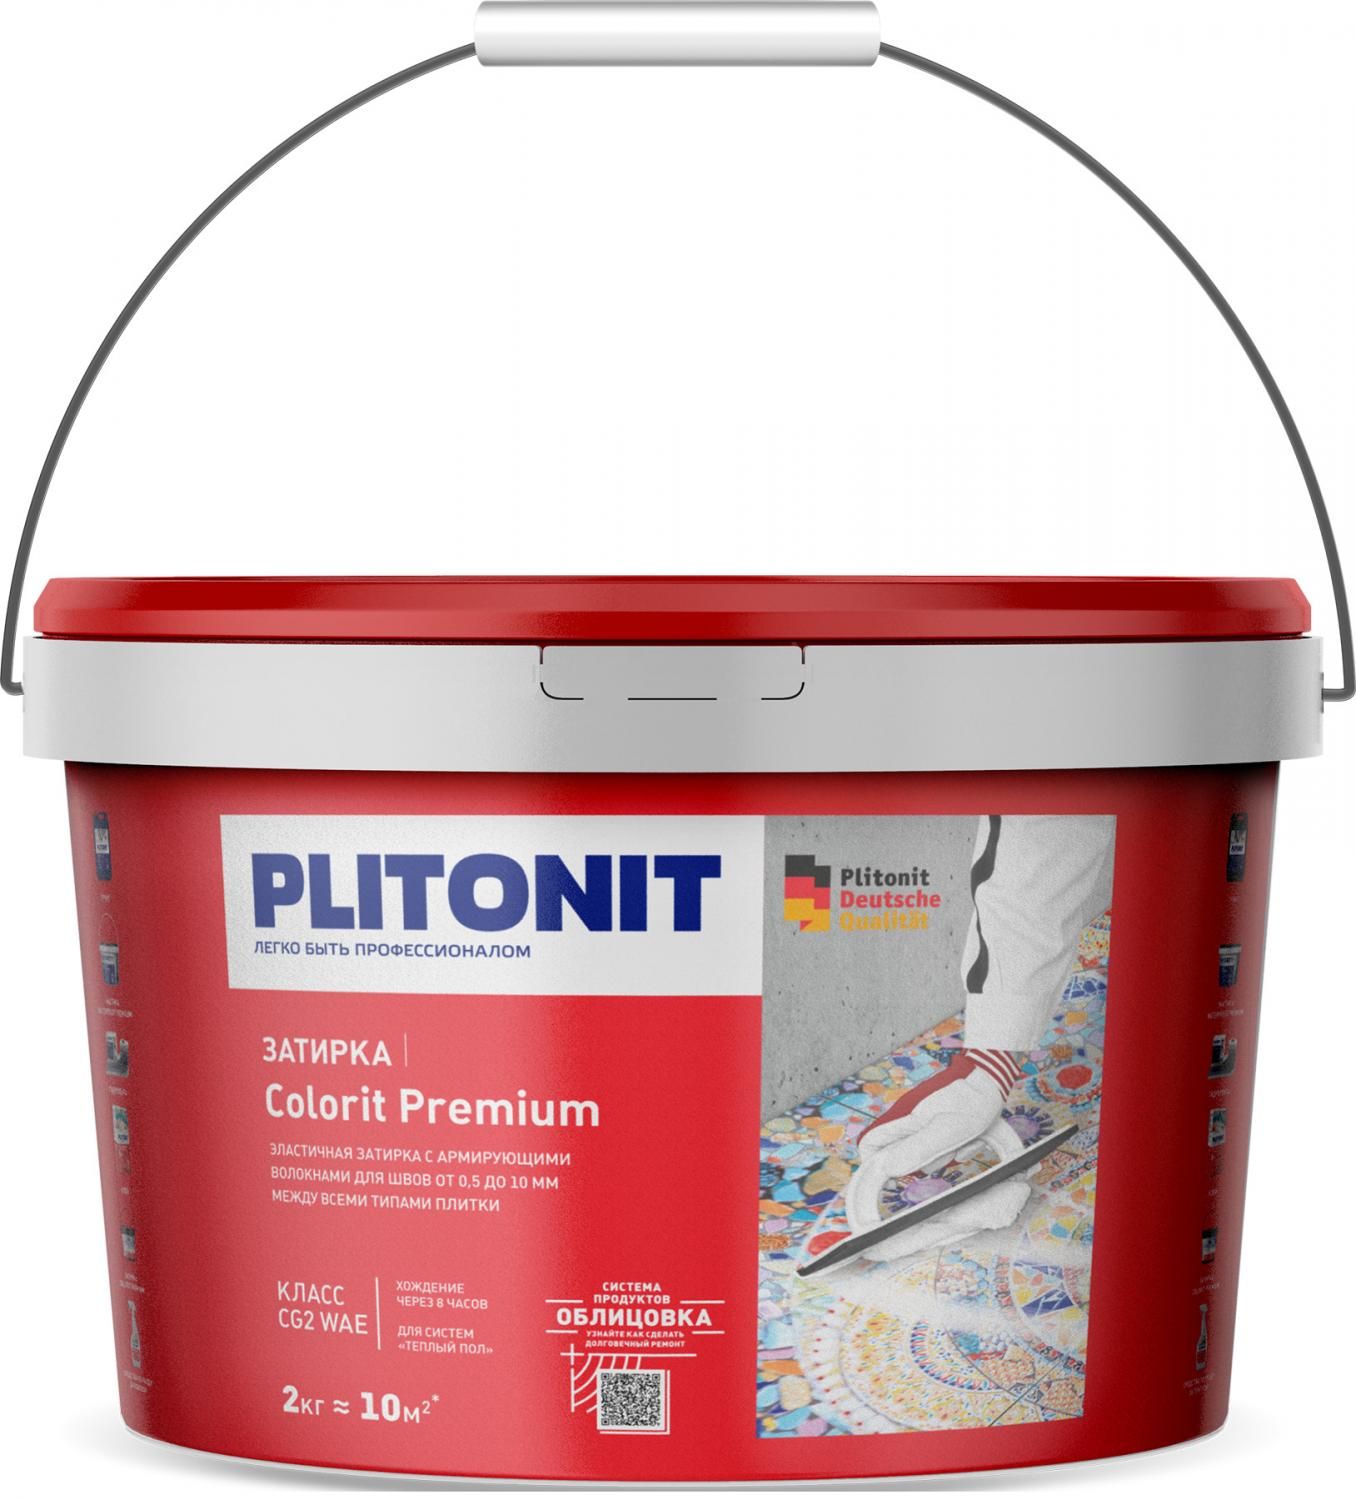 Купить Затирка Plitonit Colorit Premium салатовая 2 кг цементная